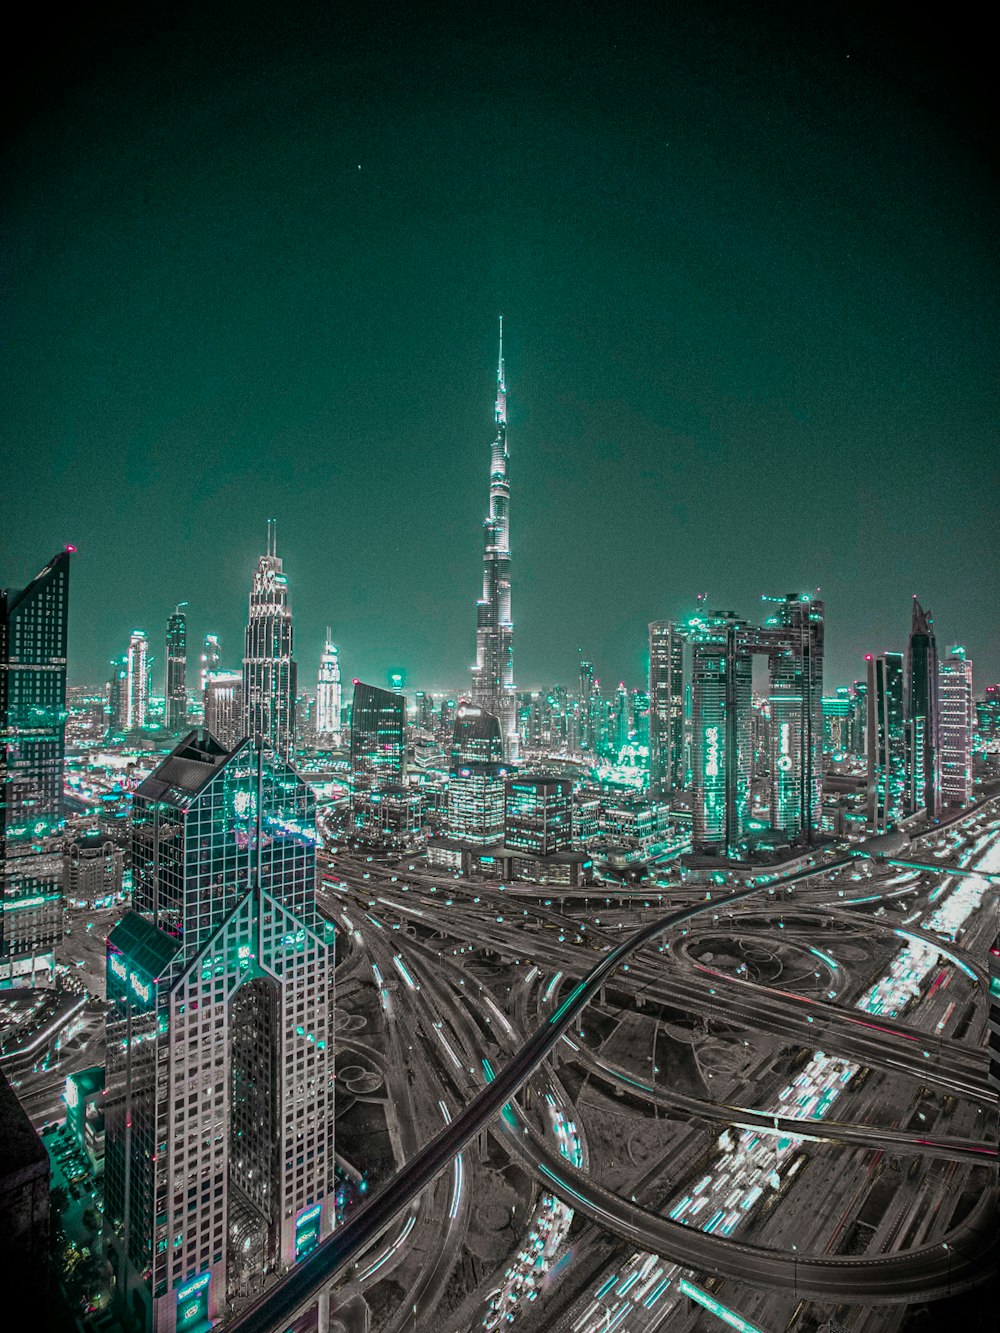 Dubai City during night time